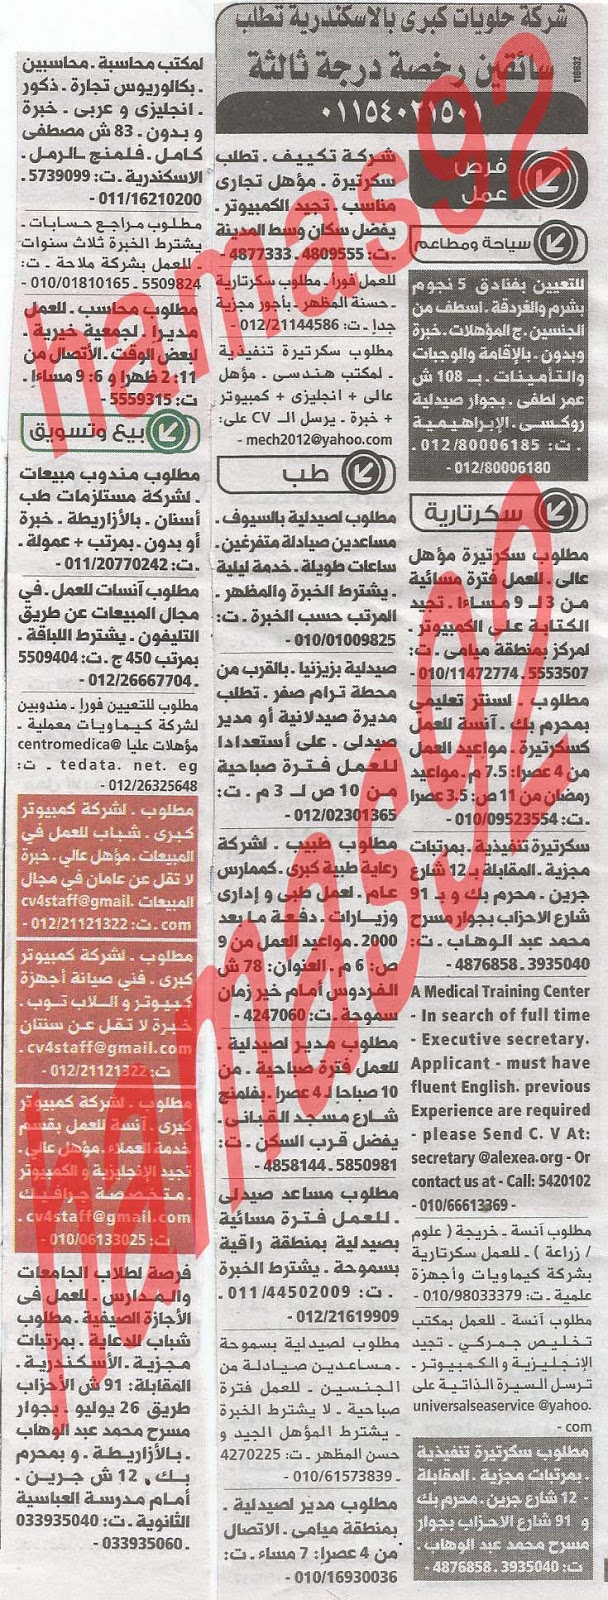 وظائف جريدة الوسيط الاسكندرية 23/7/2013 ( 14 رمضان) %D9%88+%D8%B3+%D8%B3+4